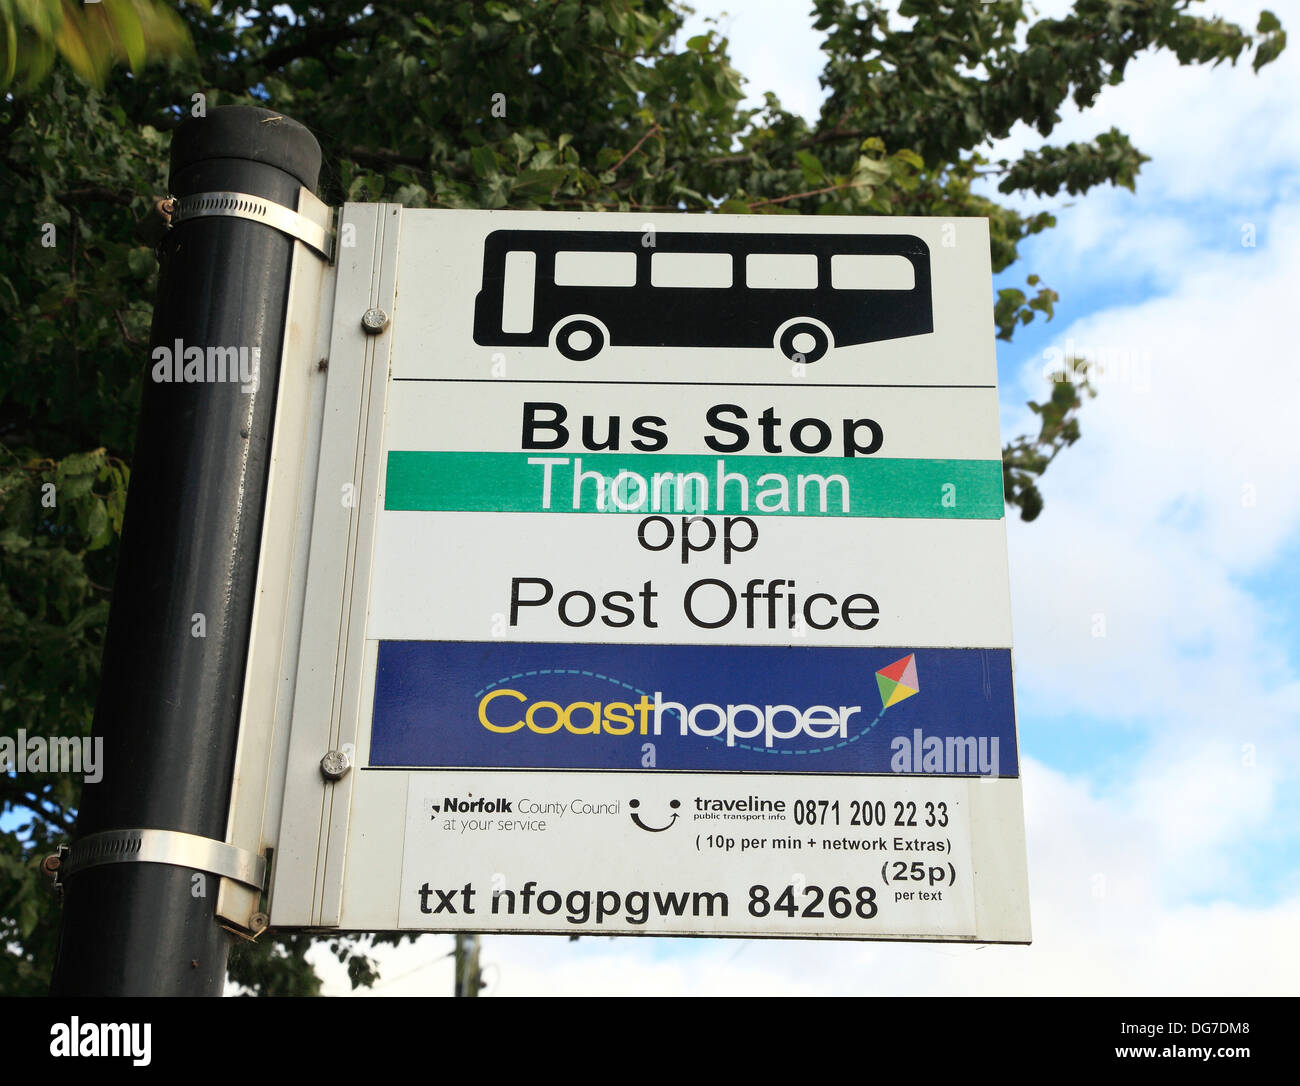 Coasthopper Bus Stop, Thorham, Norfolk, service public transport England UK, coast hopper coastal route Stock Photo